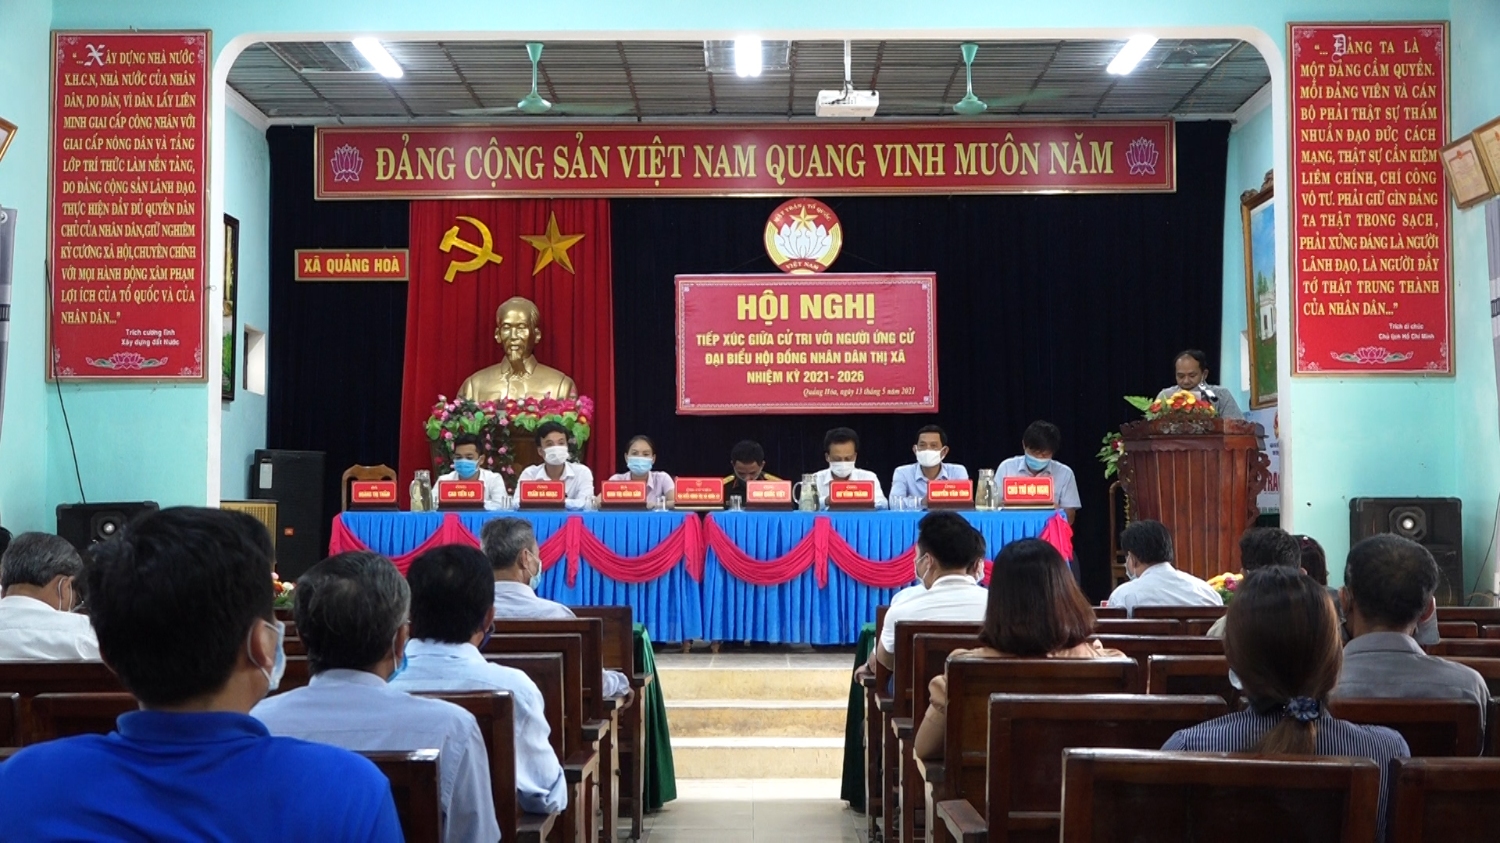 Toàn cảnh dưới lên Hội Nghị tiếp xúc cử tri 02 xã Quảng Hòa và Quảng Thủy với người ứng cử đại biểu HĐND thị xã Ba Đồn, nhiệm kỳ 2021 – 2026